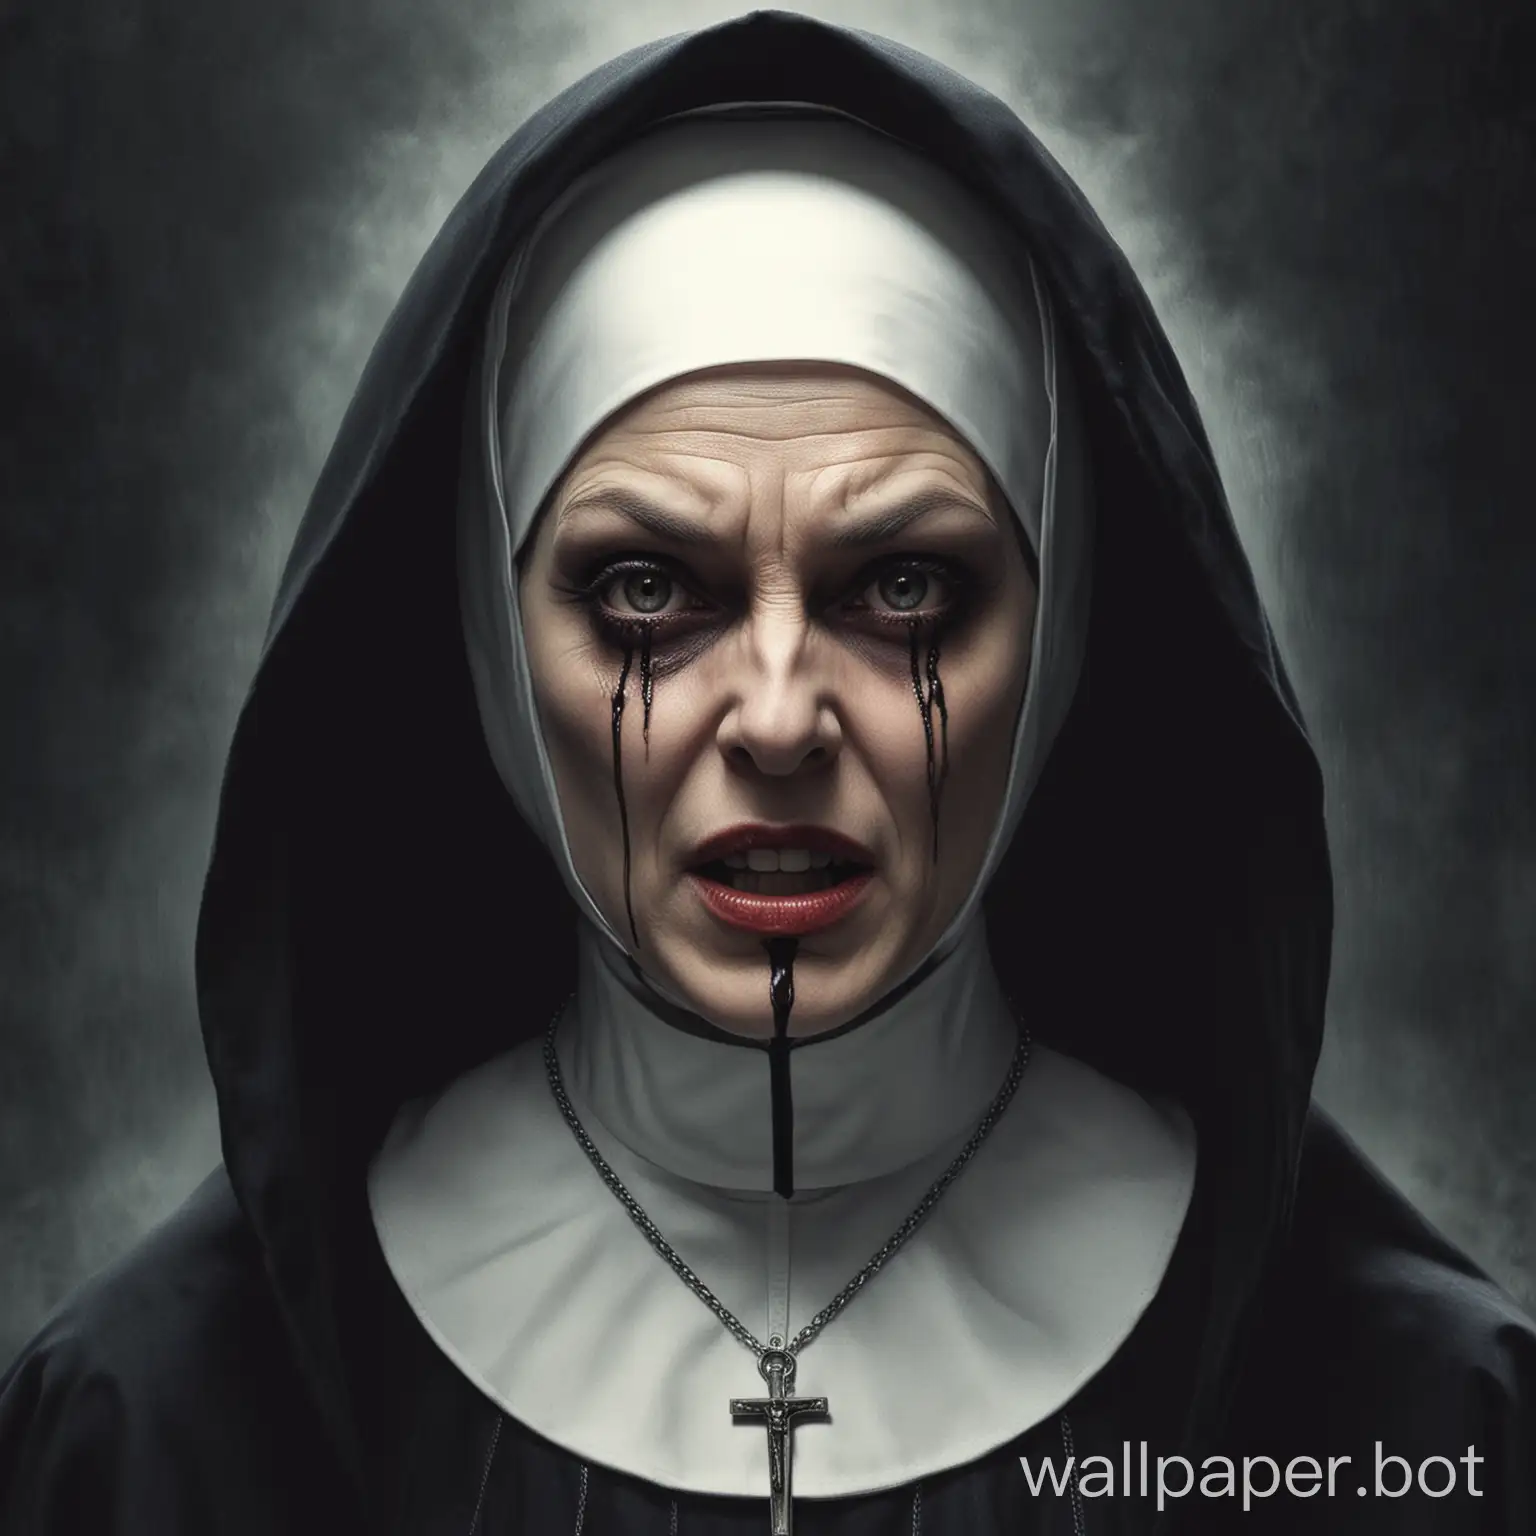 The mad nun